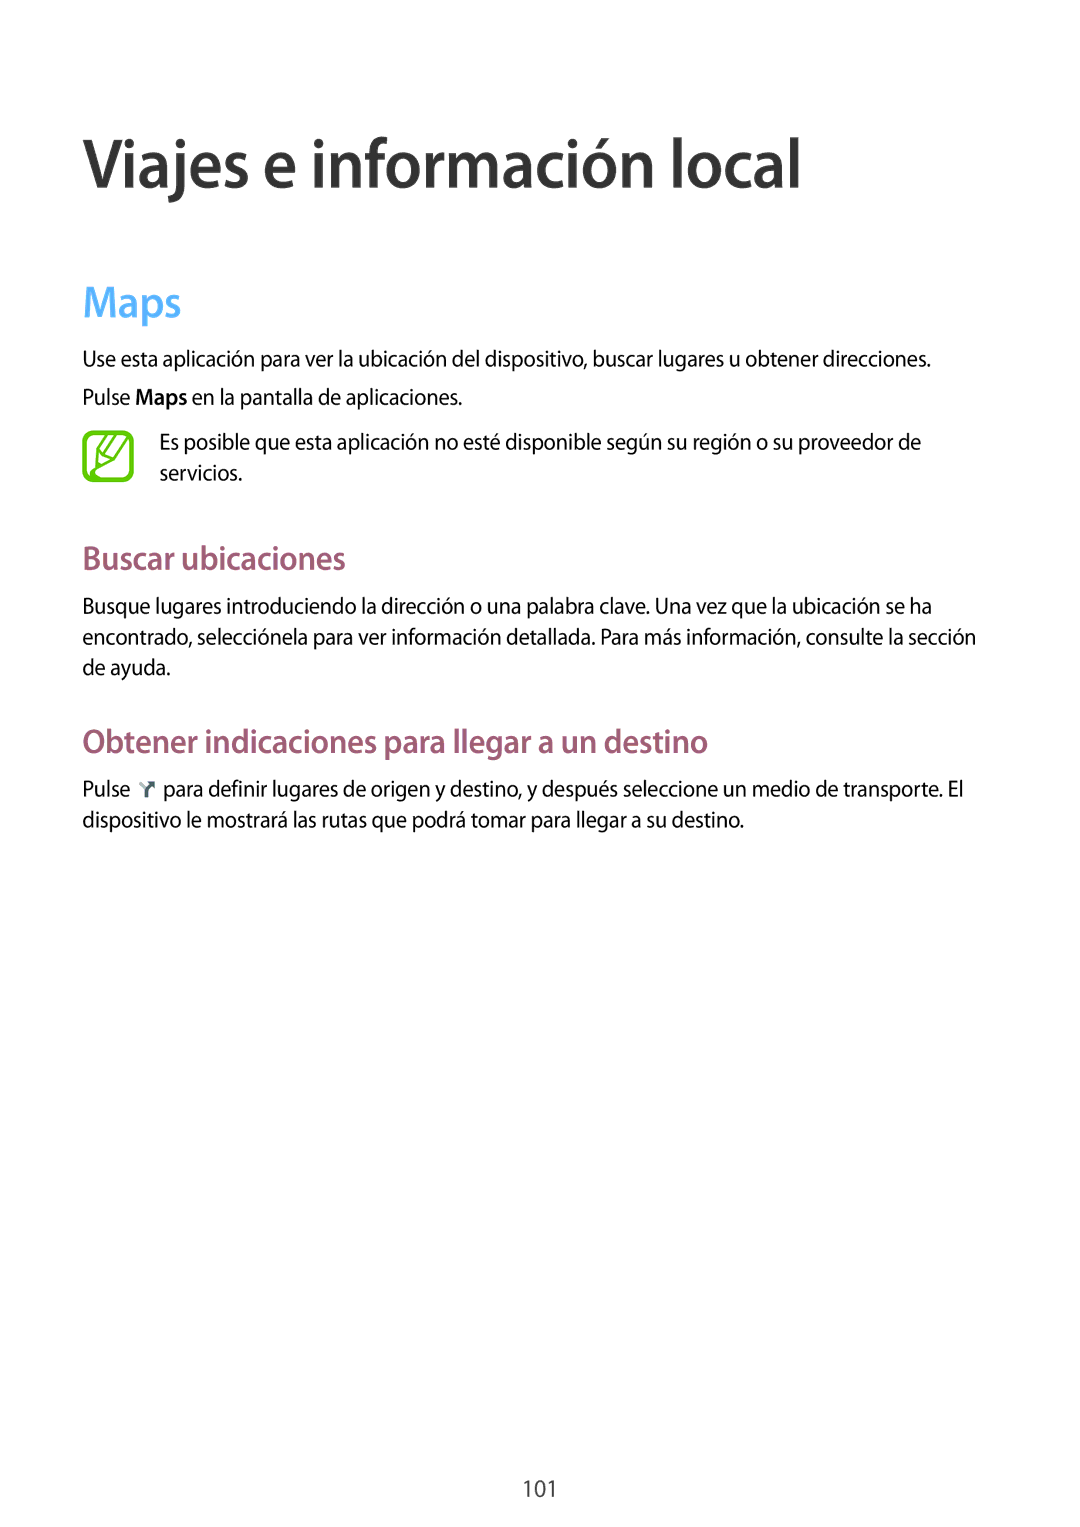 Samsung GT-N8020EAAATL Viajes e información local, Maps, Buscar ubicaciones, Obtener indicaciones para llegar a un destino 